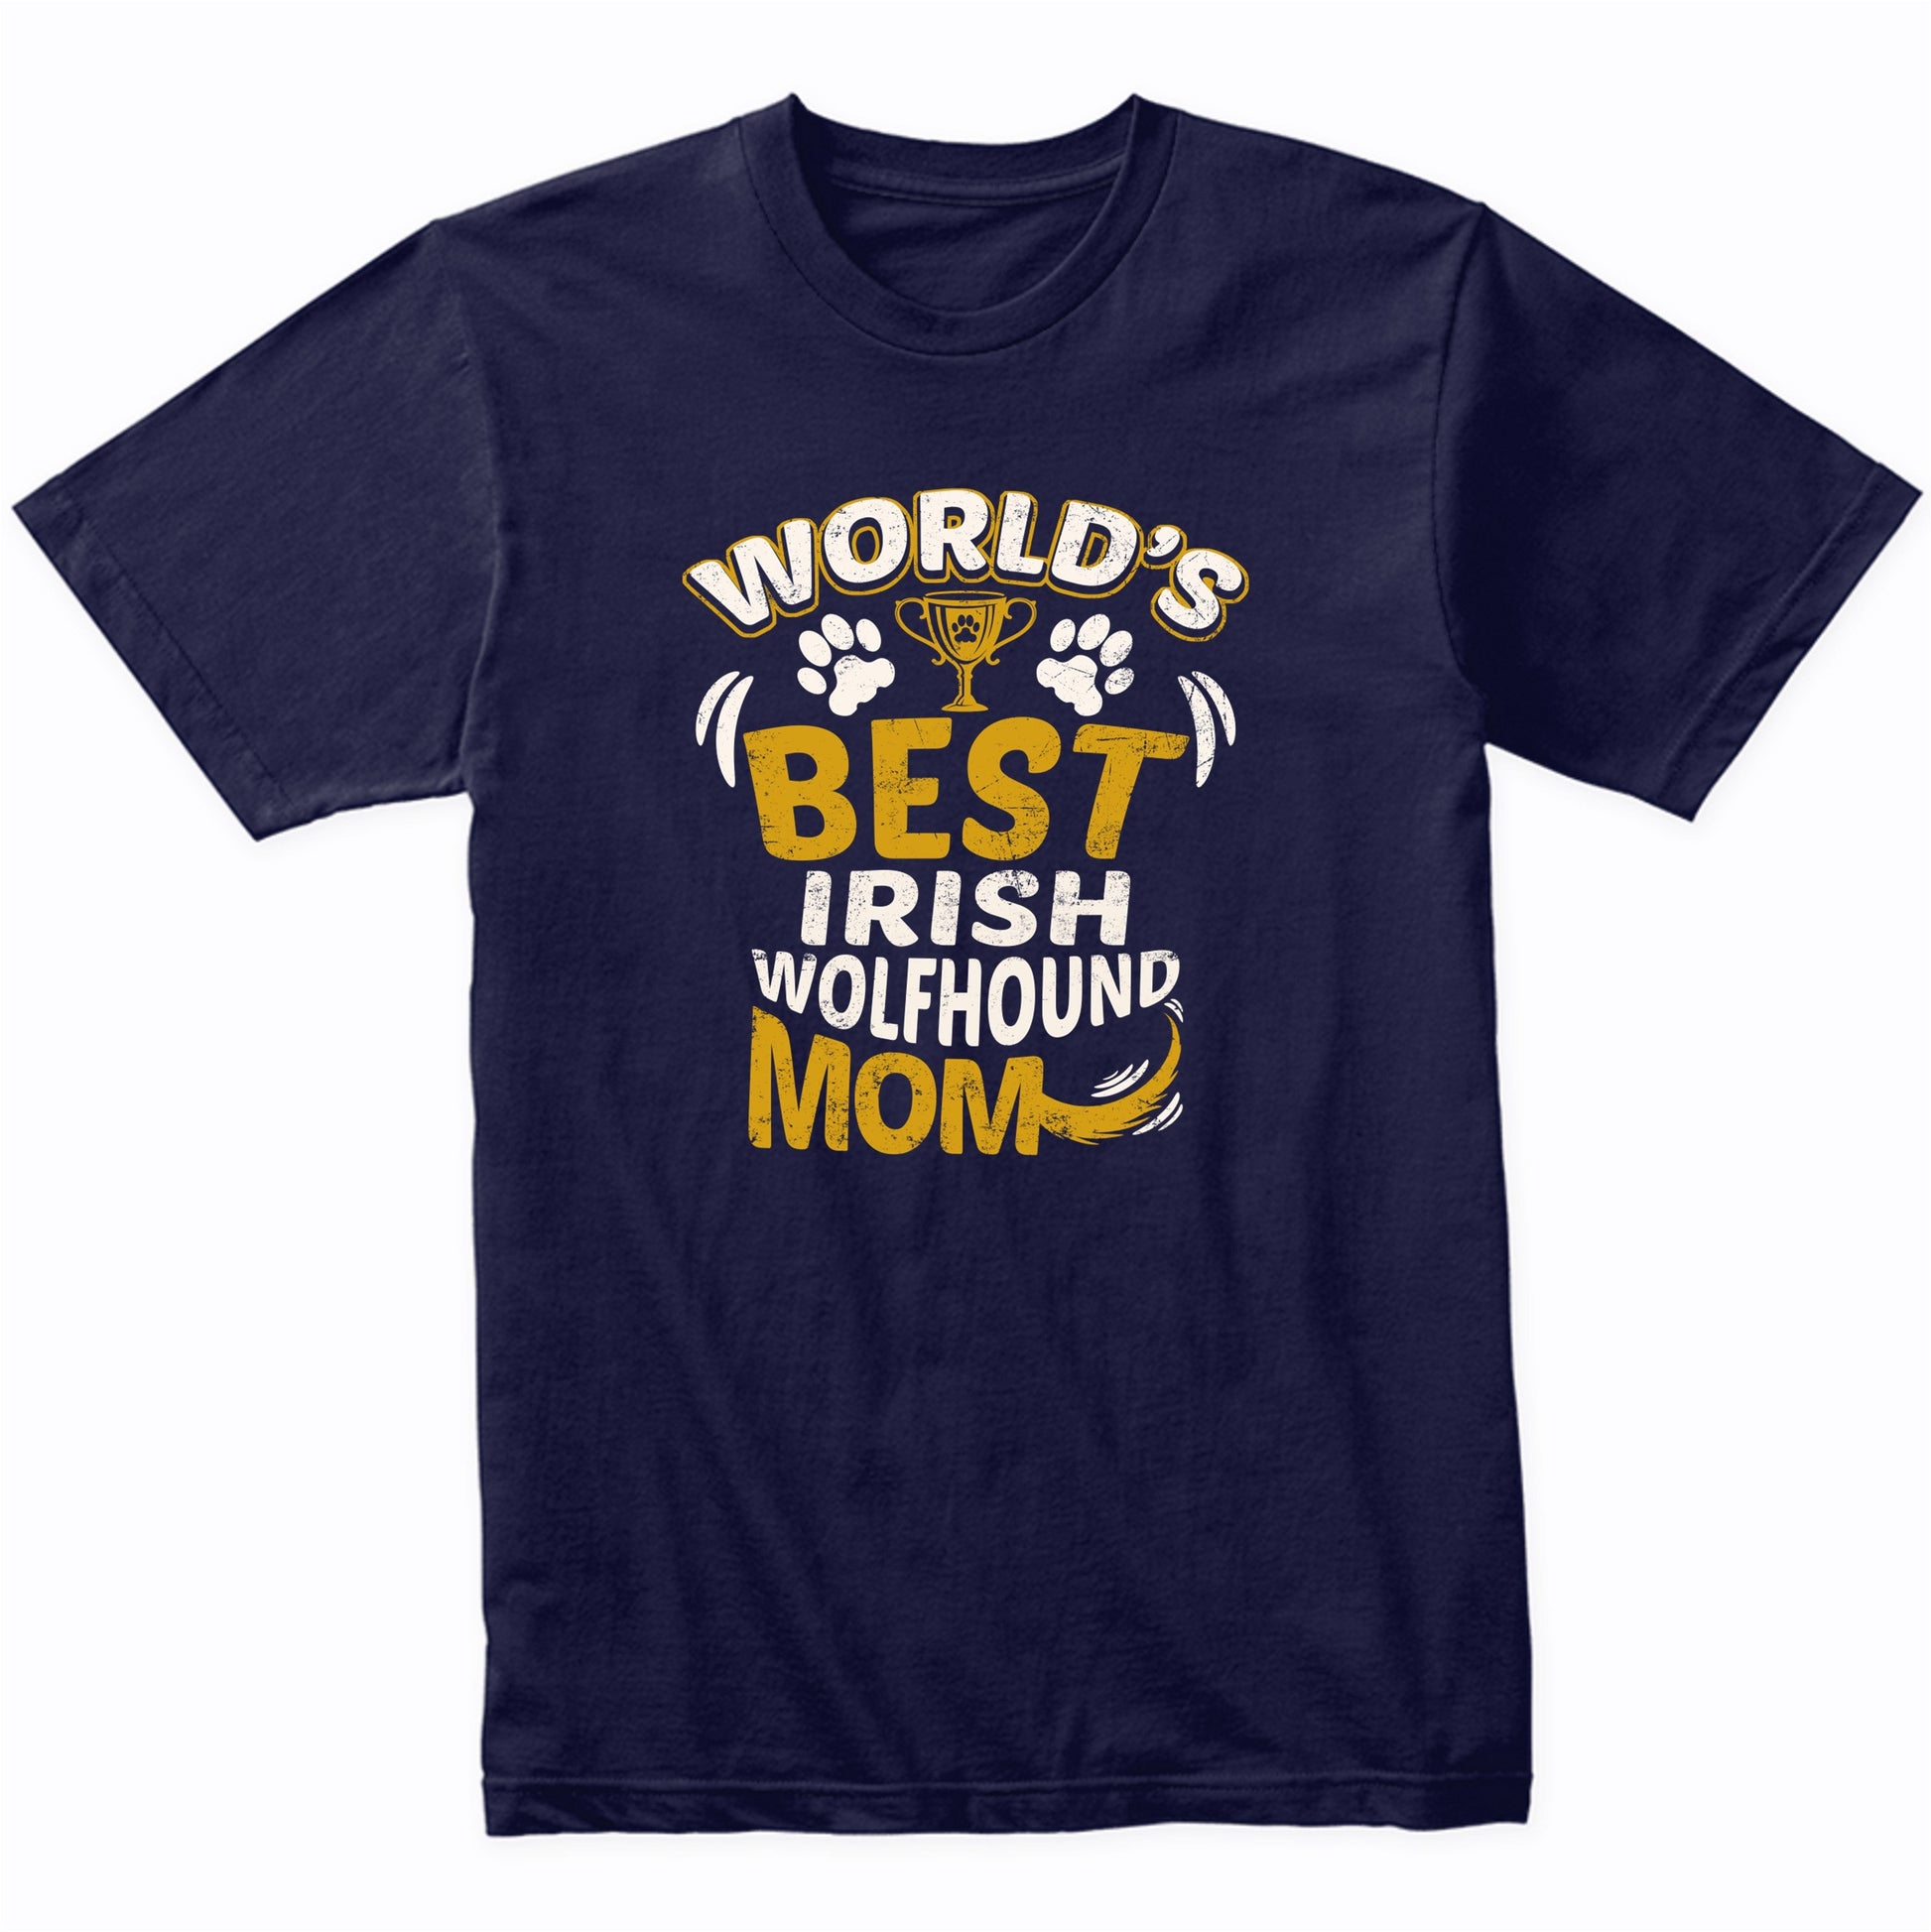 World's Best Irish Wolfhound Mom Graphic T-Shirt